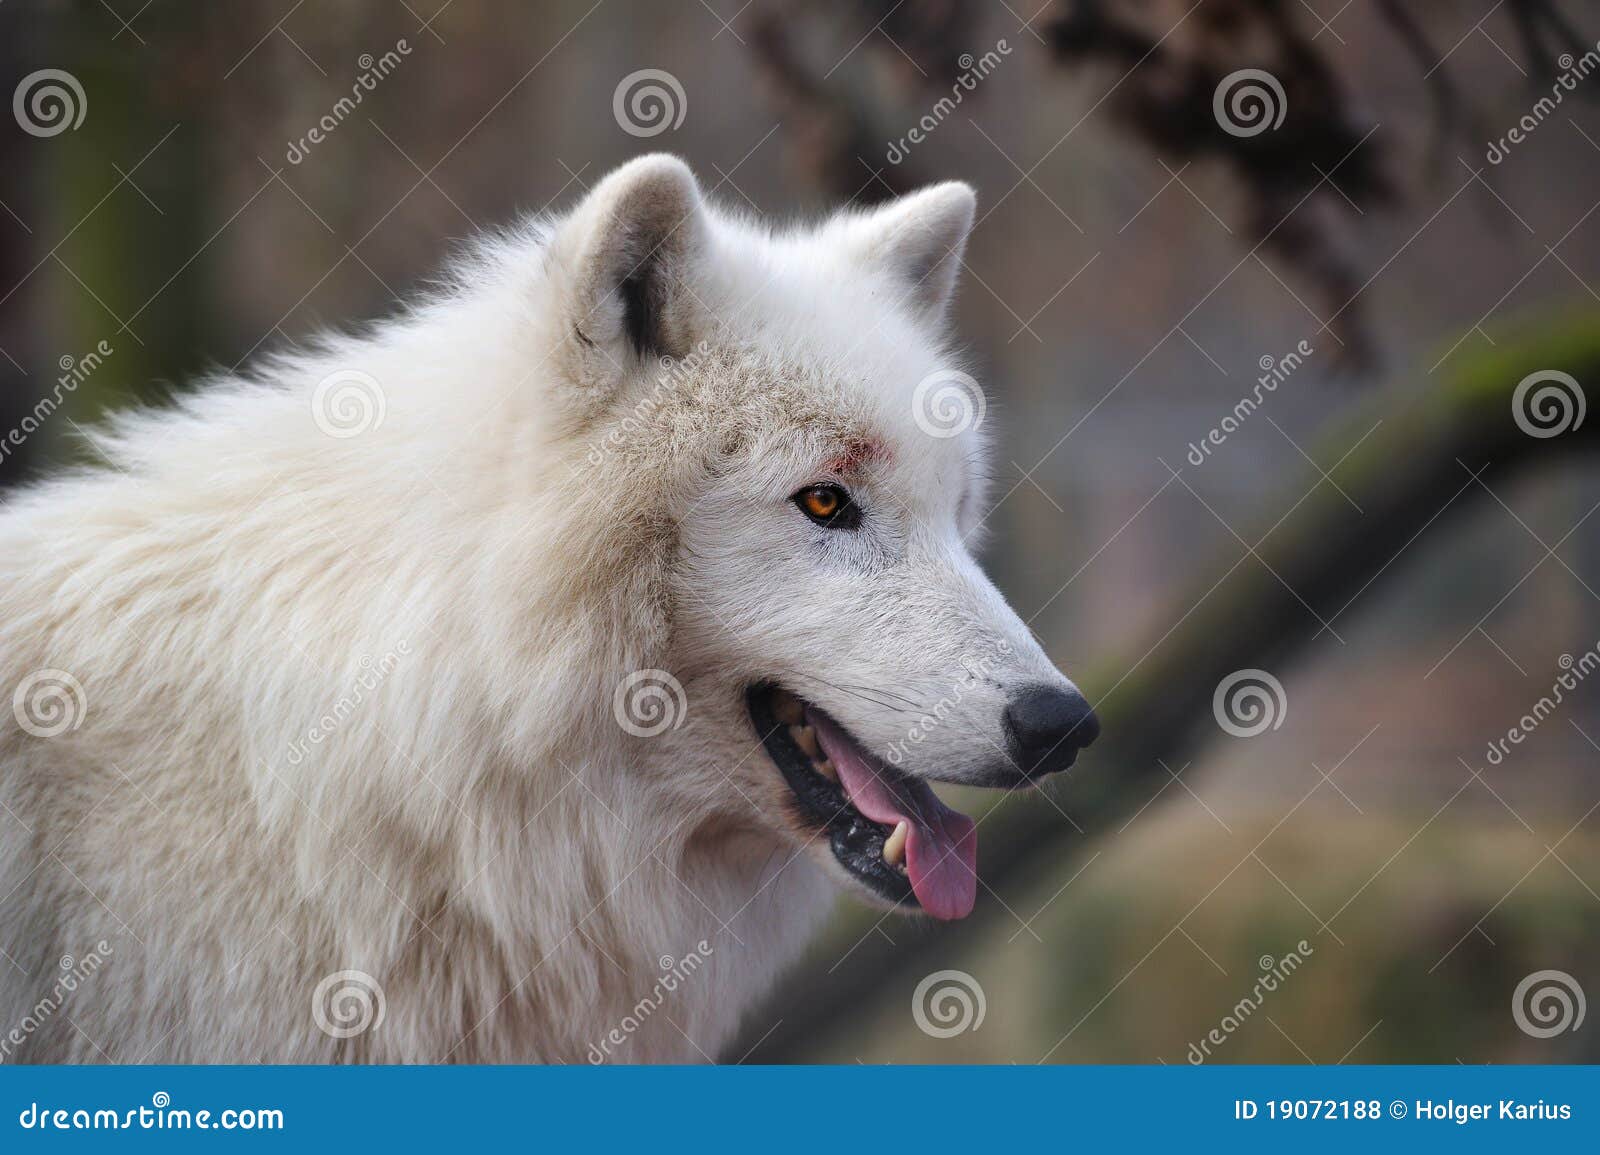 arctic wolf (canis lupus arctos)